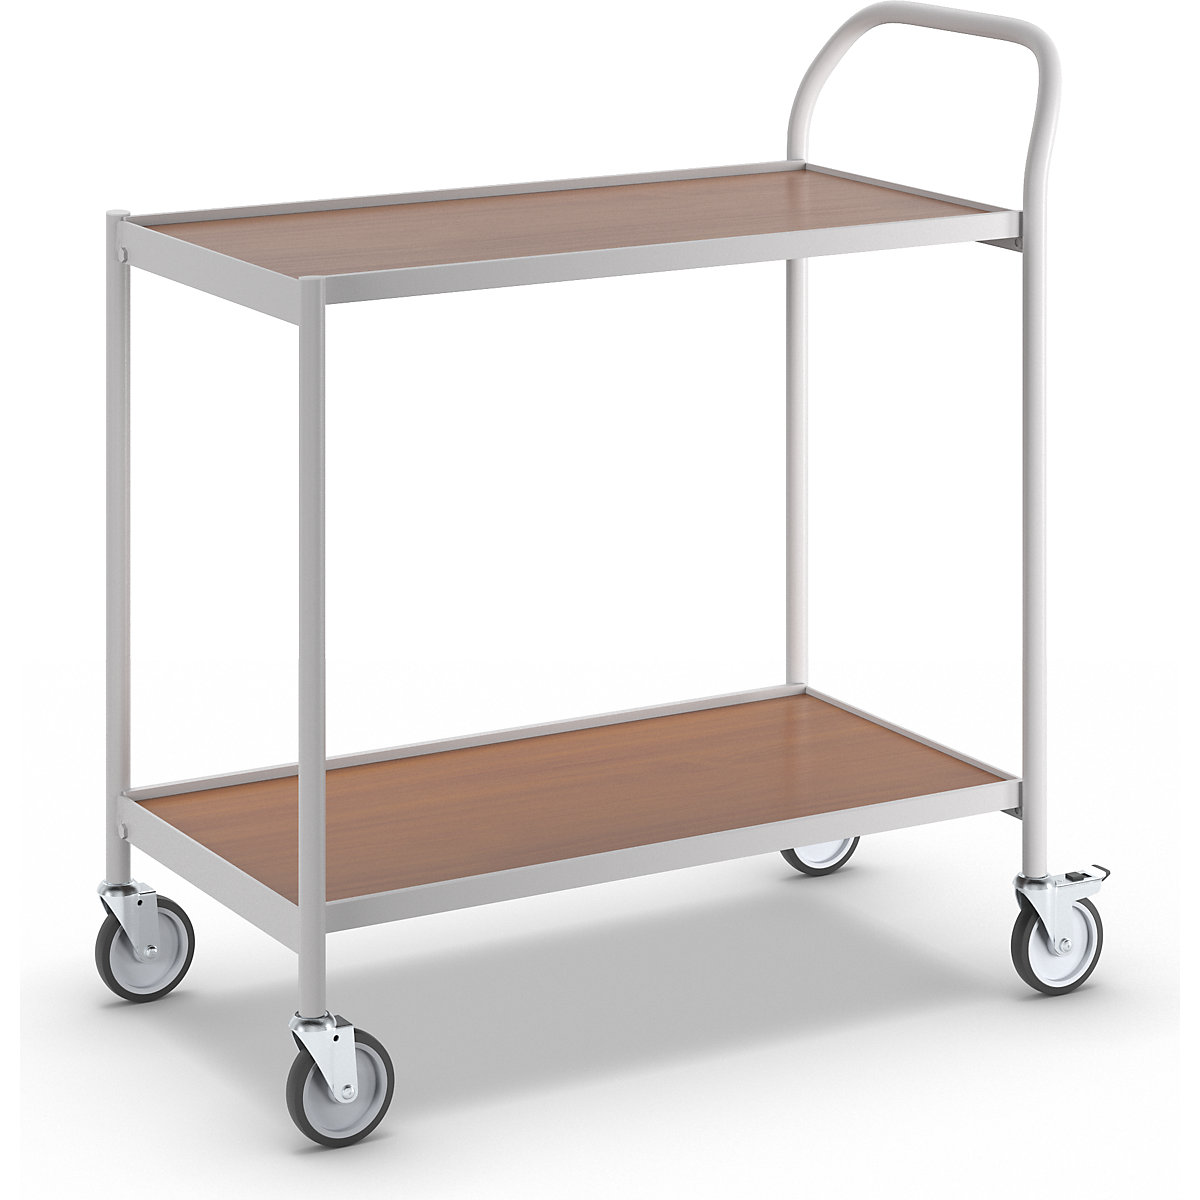 Stolový vozík – HelgeNyberg, 2 poschodia, d x š 800 x 420 mm, šedá/buk-5